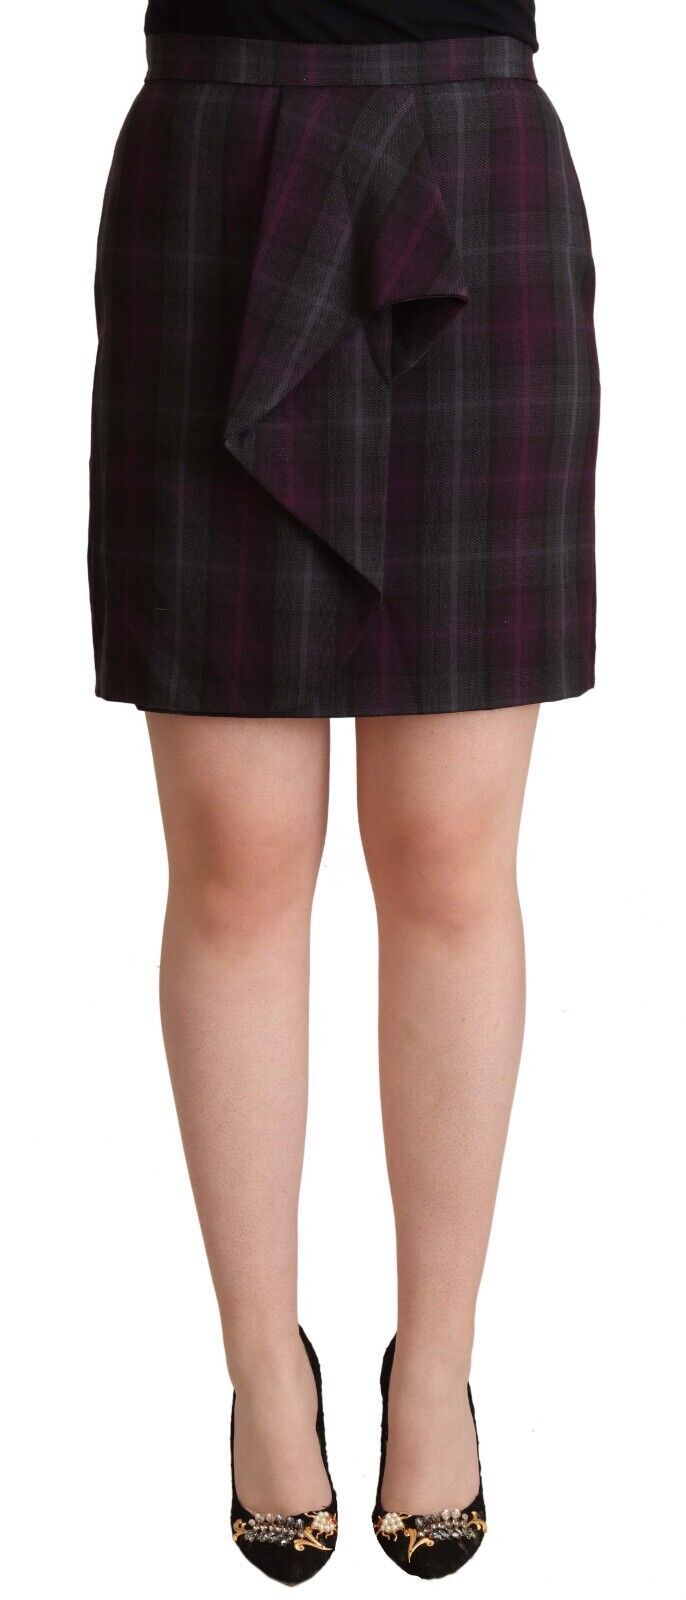 Elegant High Waisted Checkered Skirt